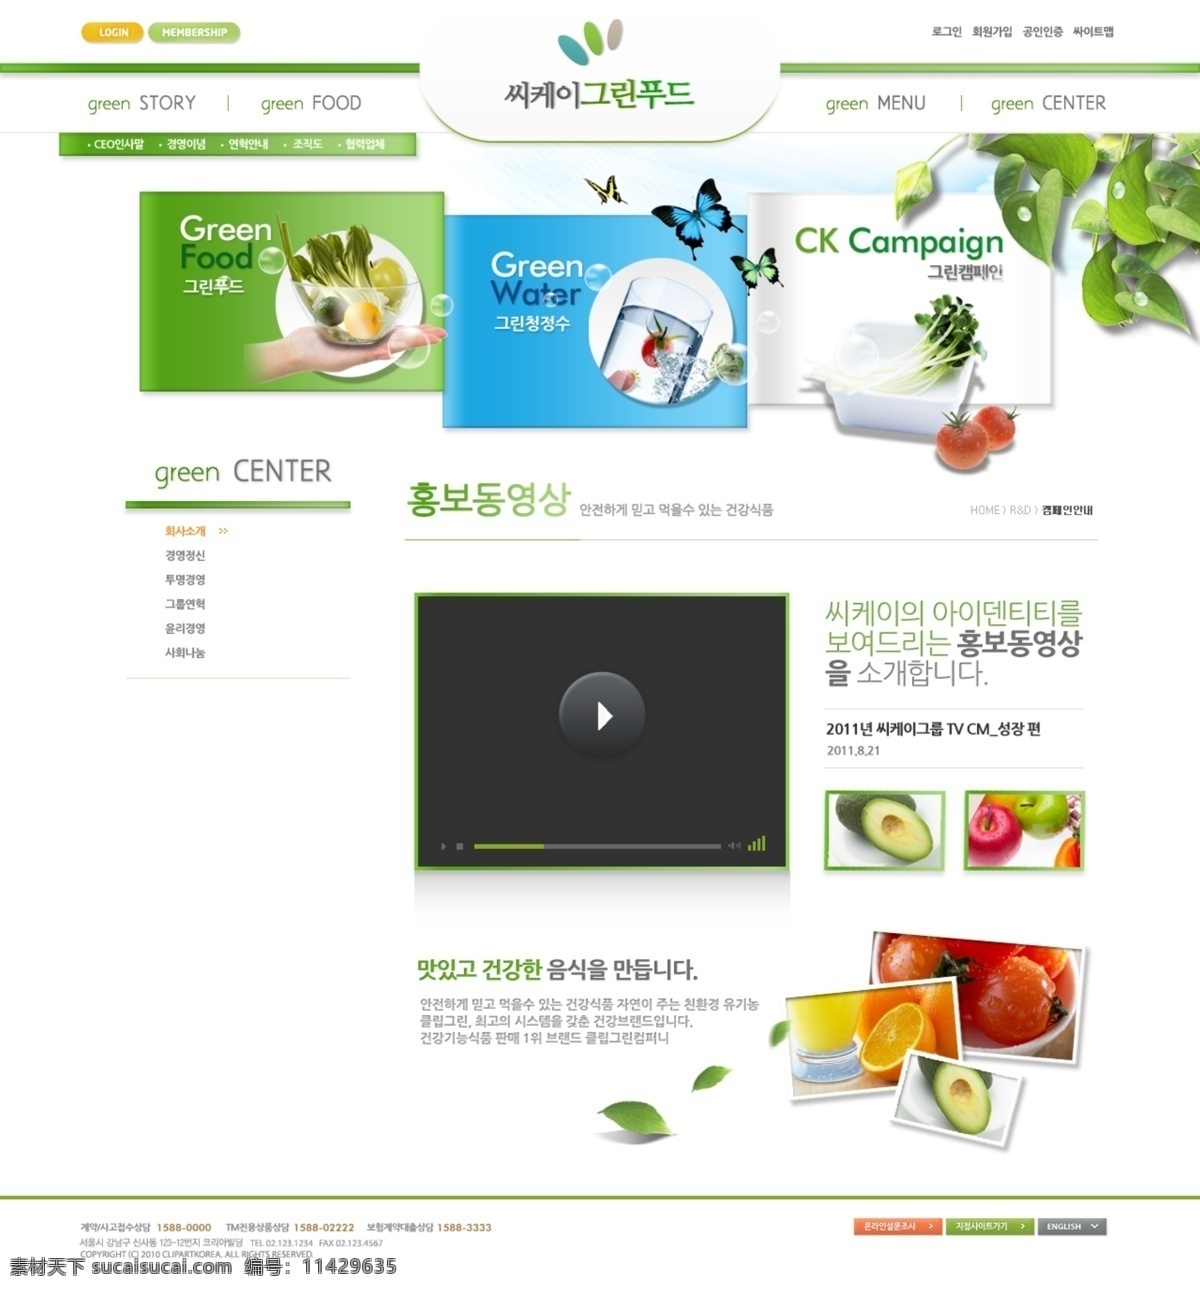 清新 页面 网页模板 韩国网站 外国网站 网页模板素材 网站模板 网页设计 韩国 网站